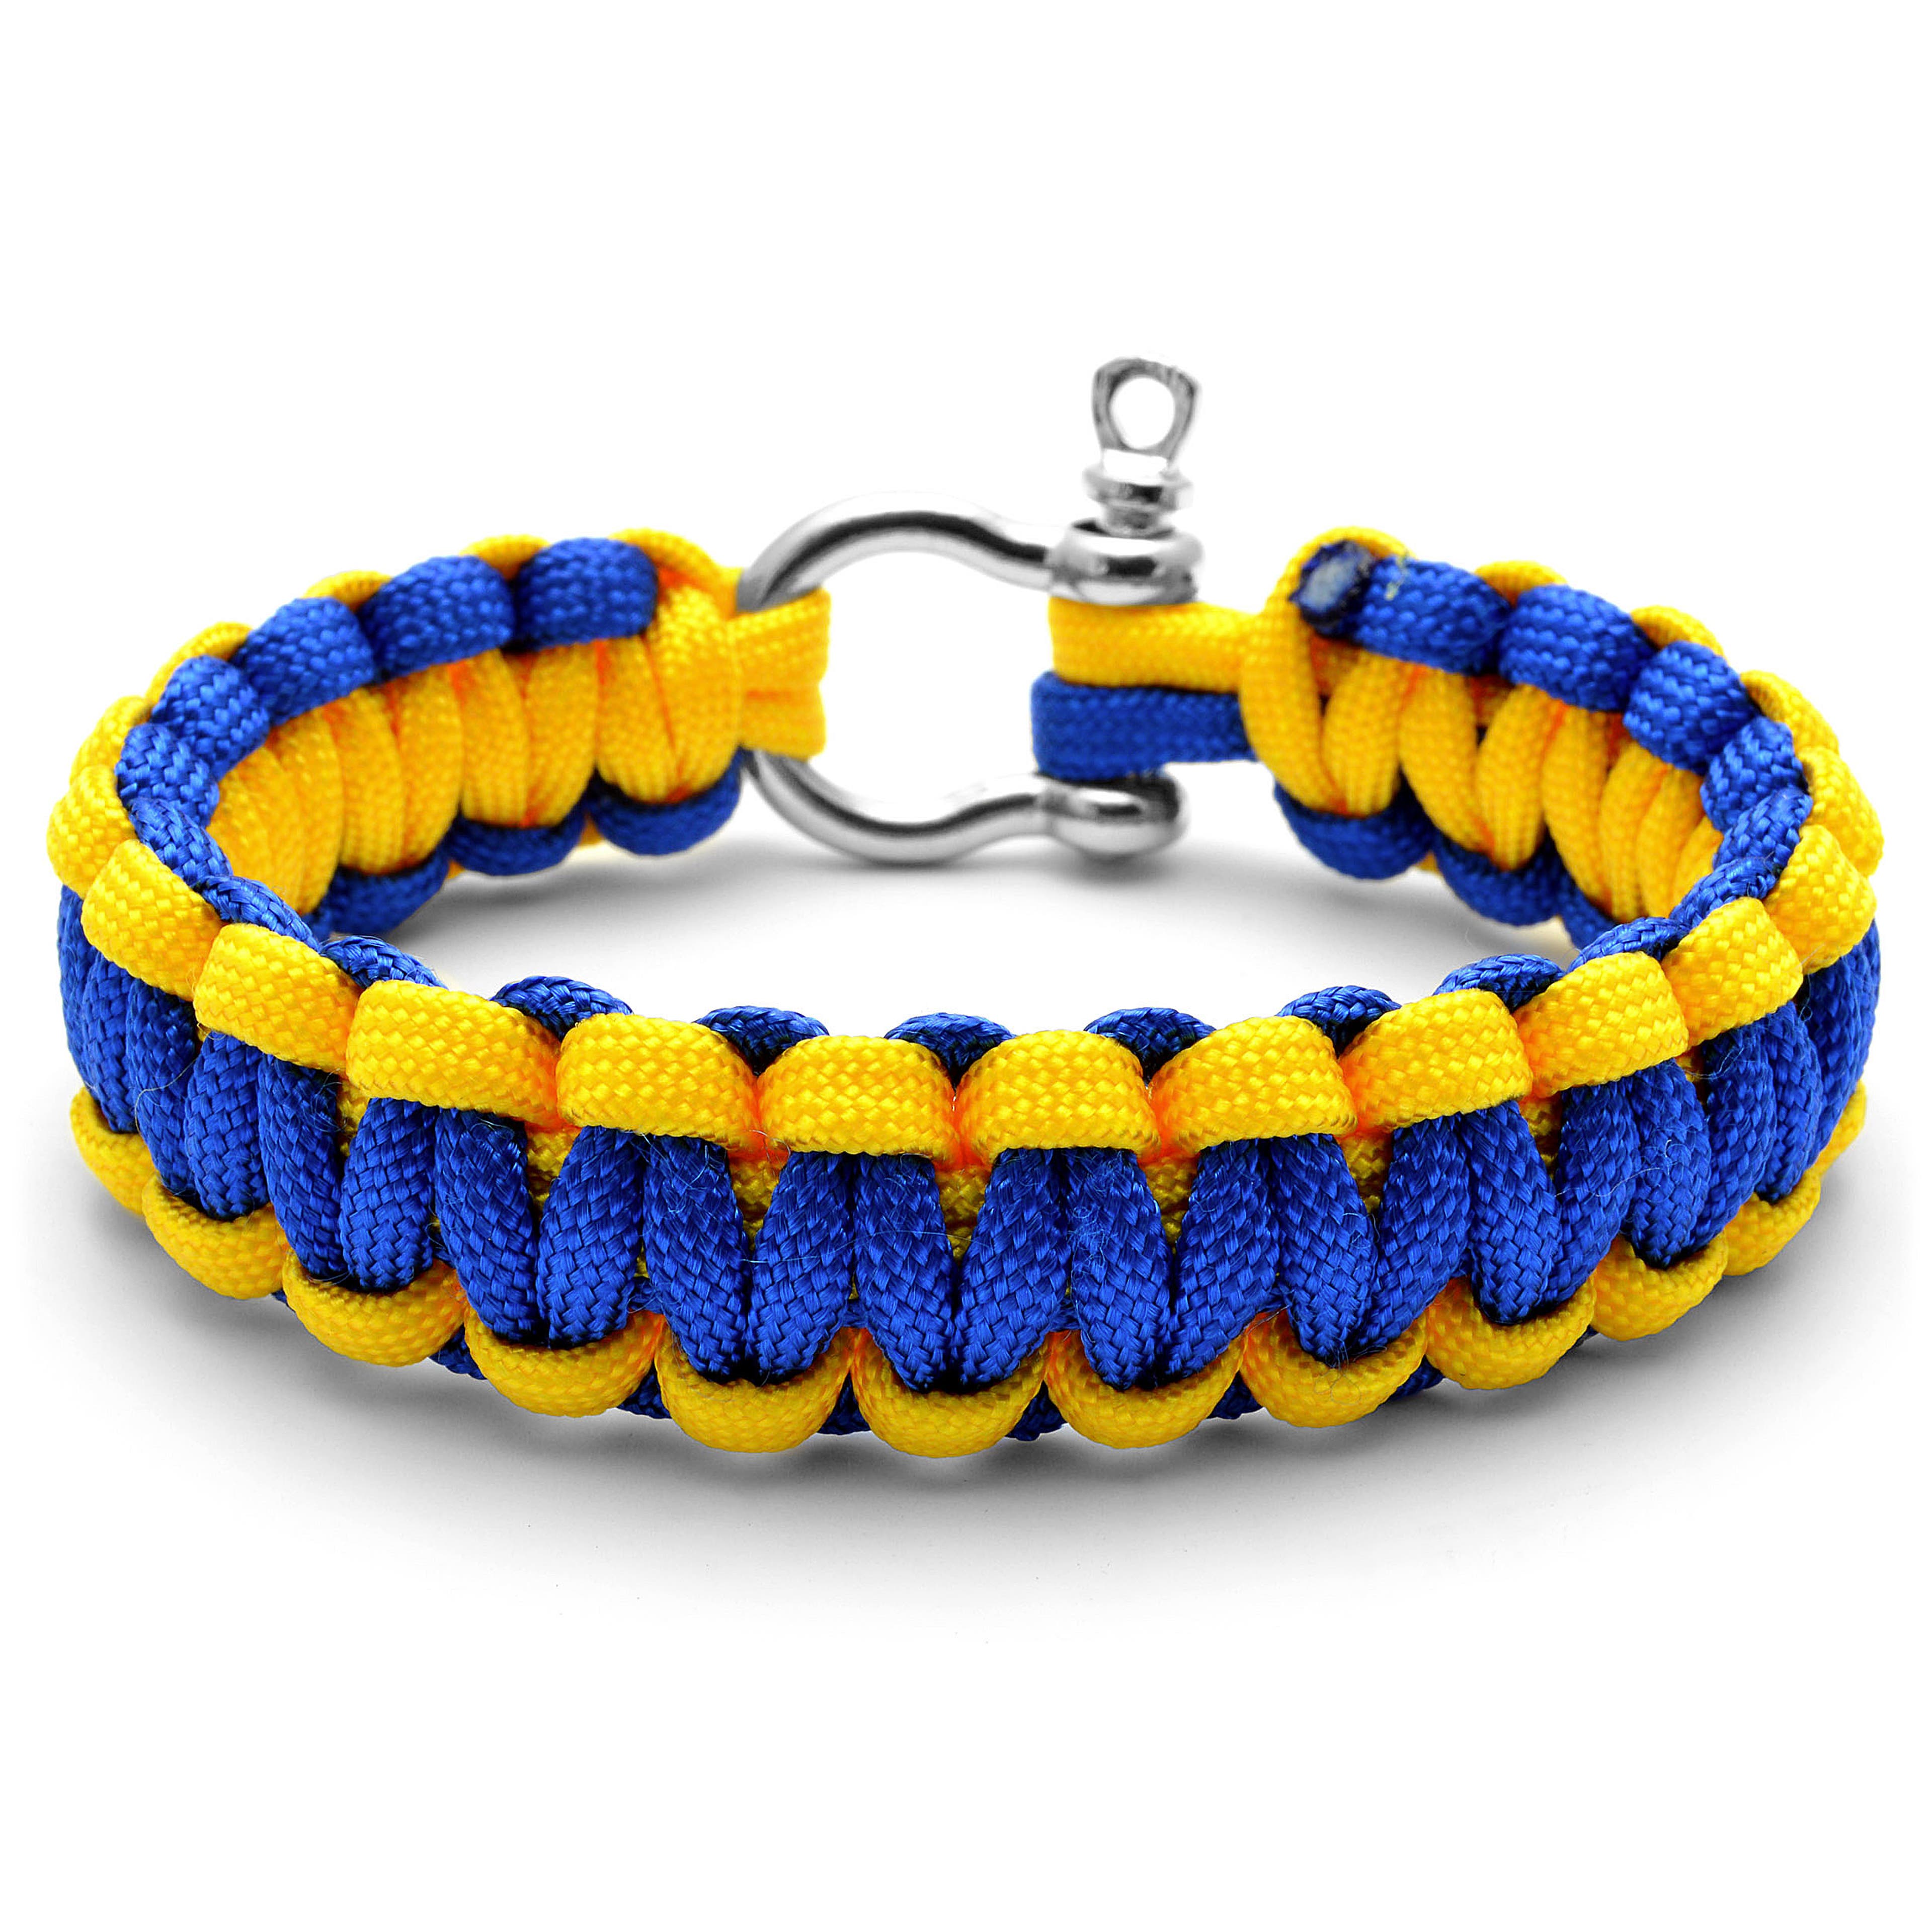 Blue & Yellow Paracord Bracelet